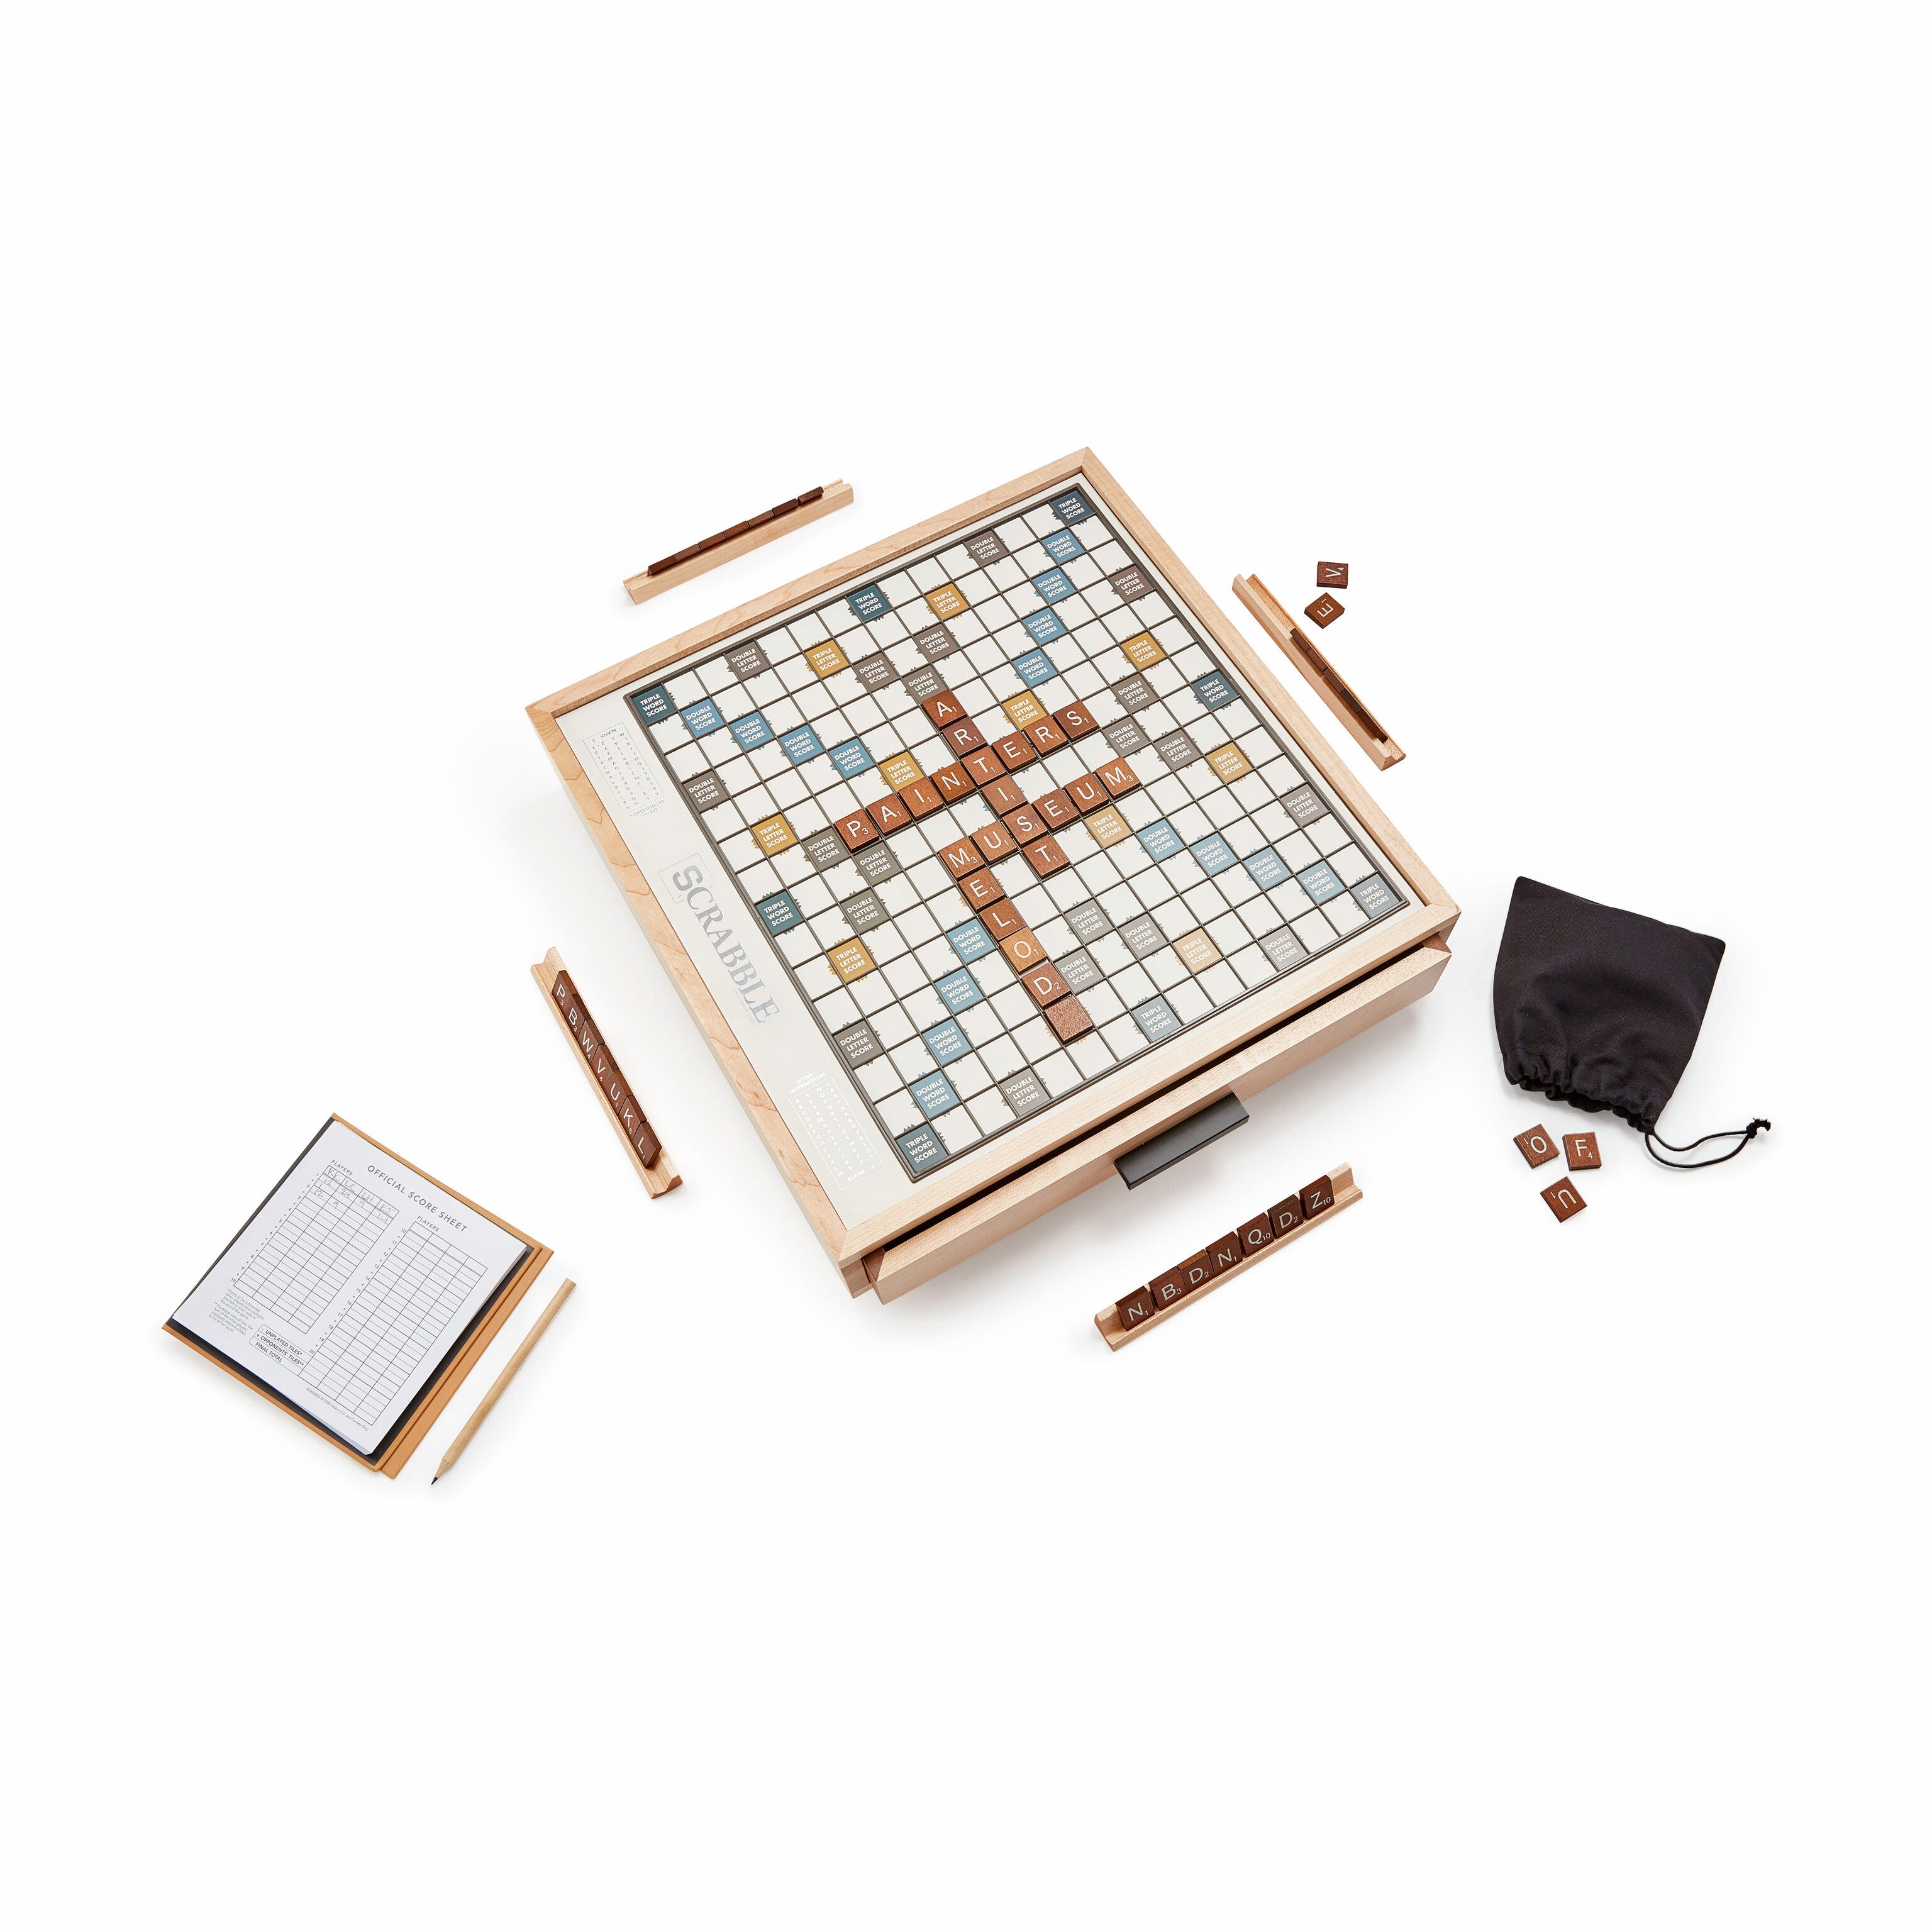 Scrabble Deluxe